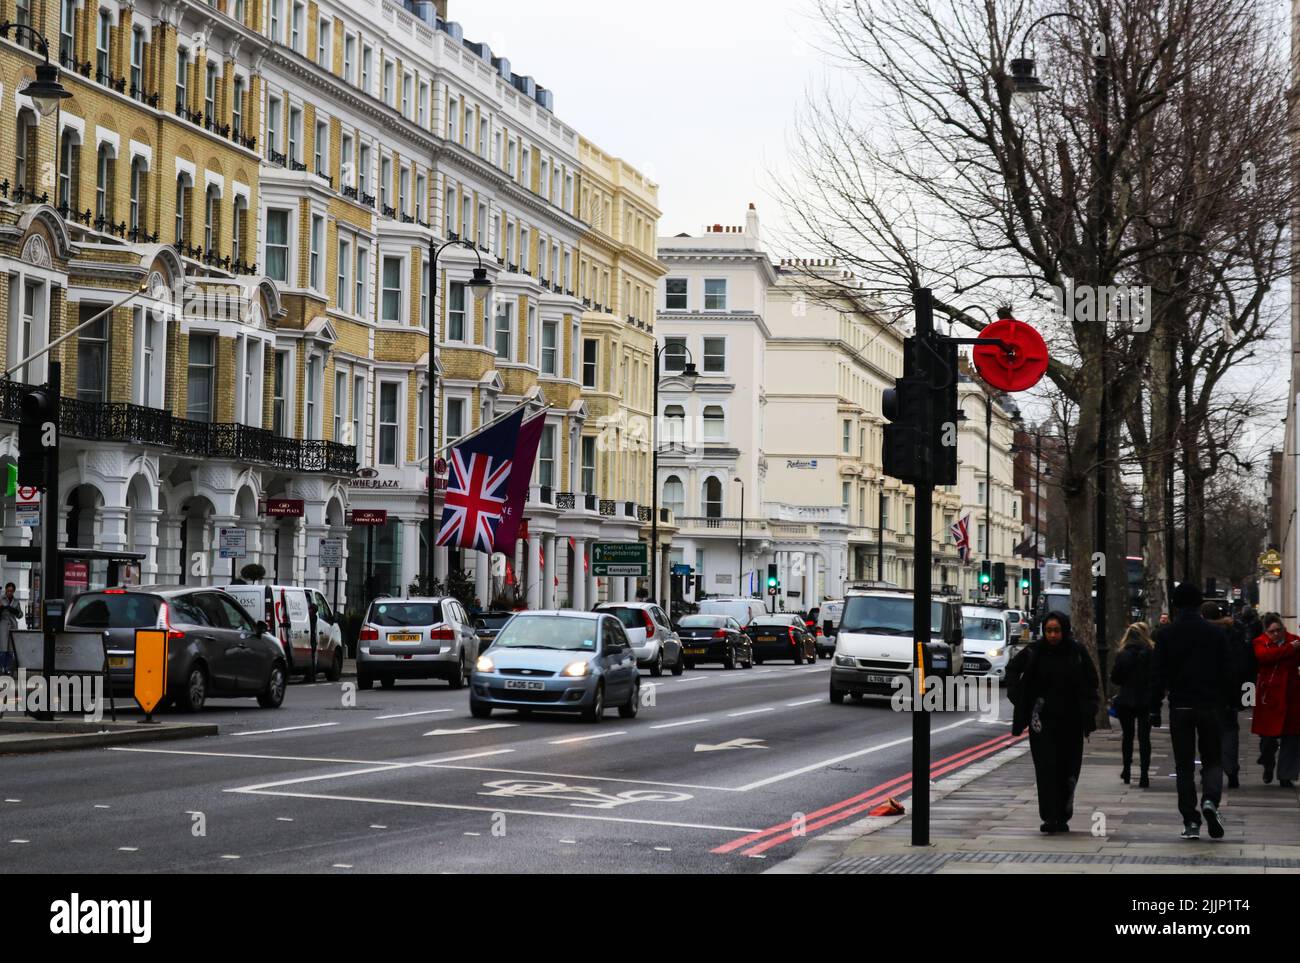 Les gens marchent sur le trottoir de la route dans le sud de Kennsington avec le drapeau britannique volant de l'autre côté de la rue par une journée froide Banque D'Images